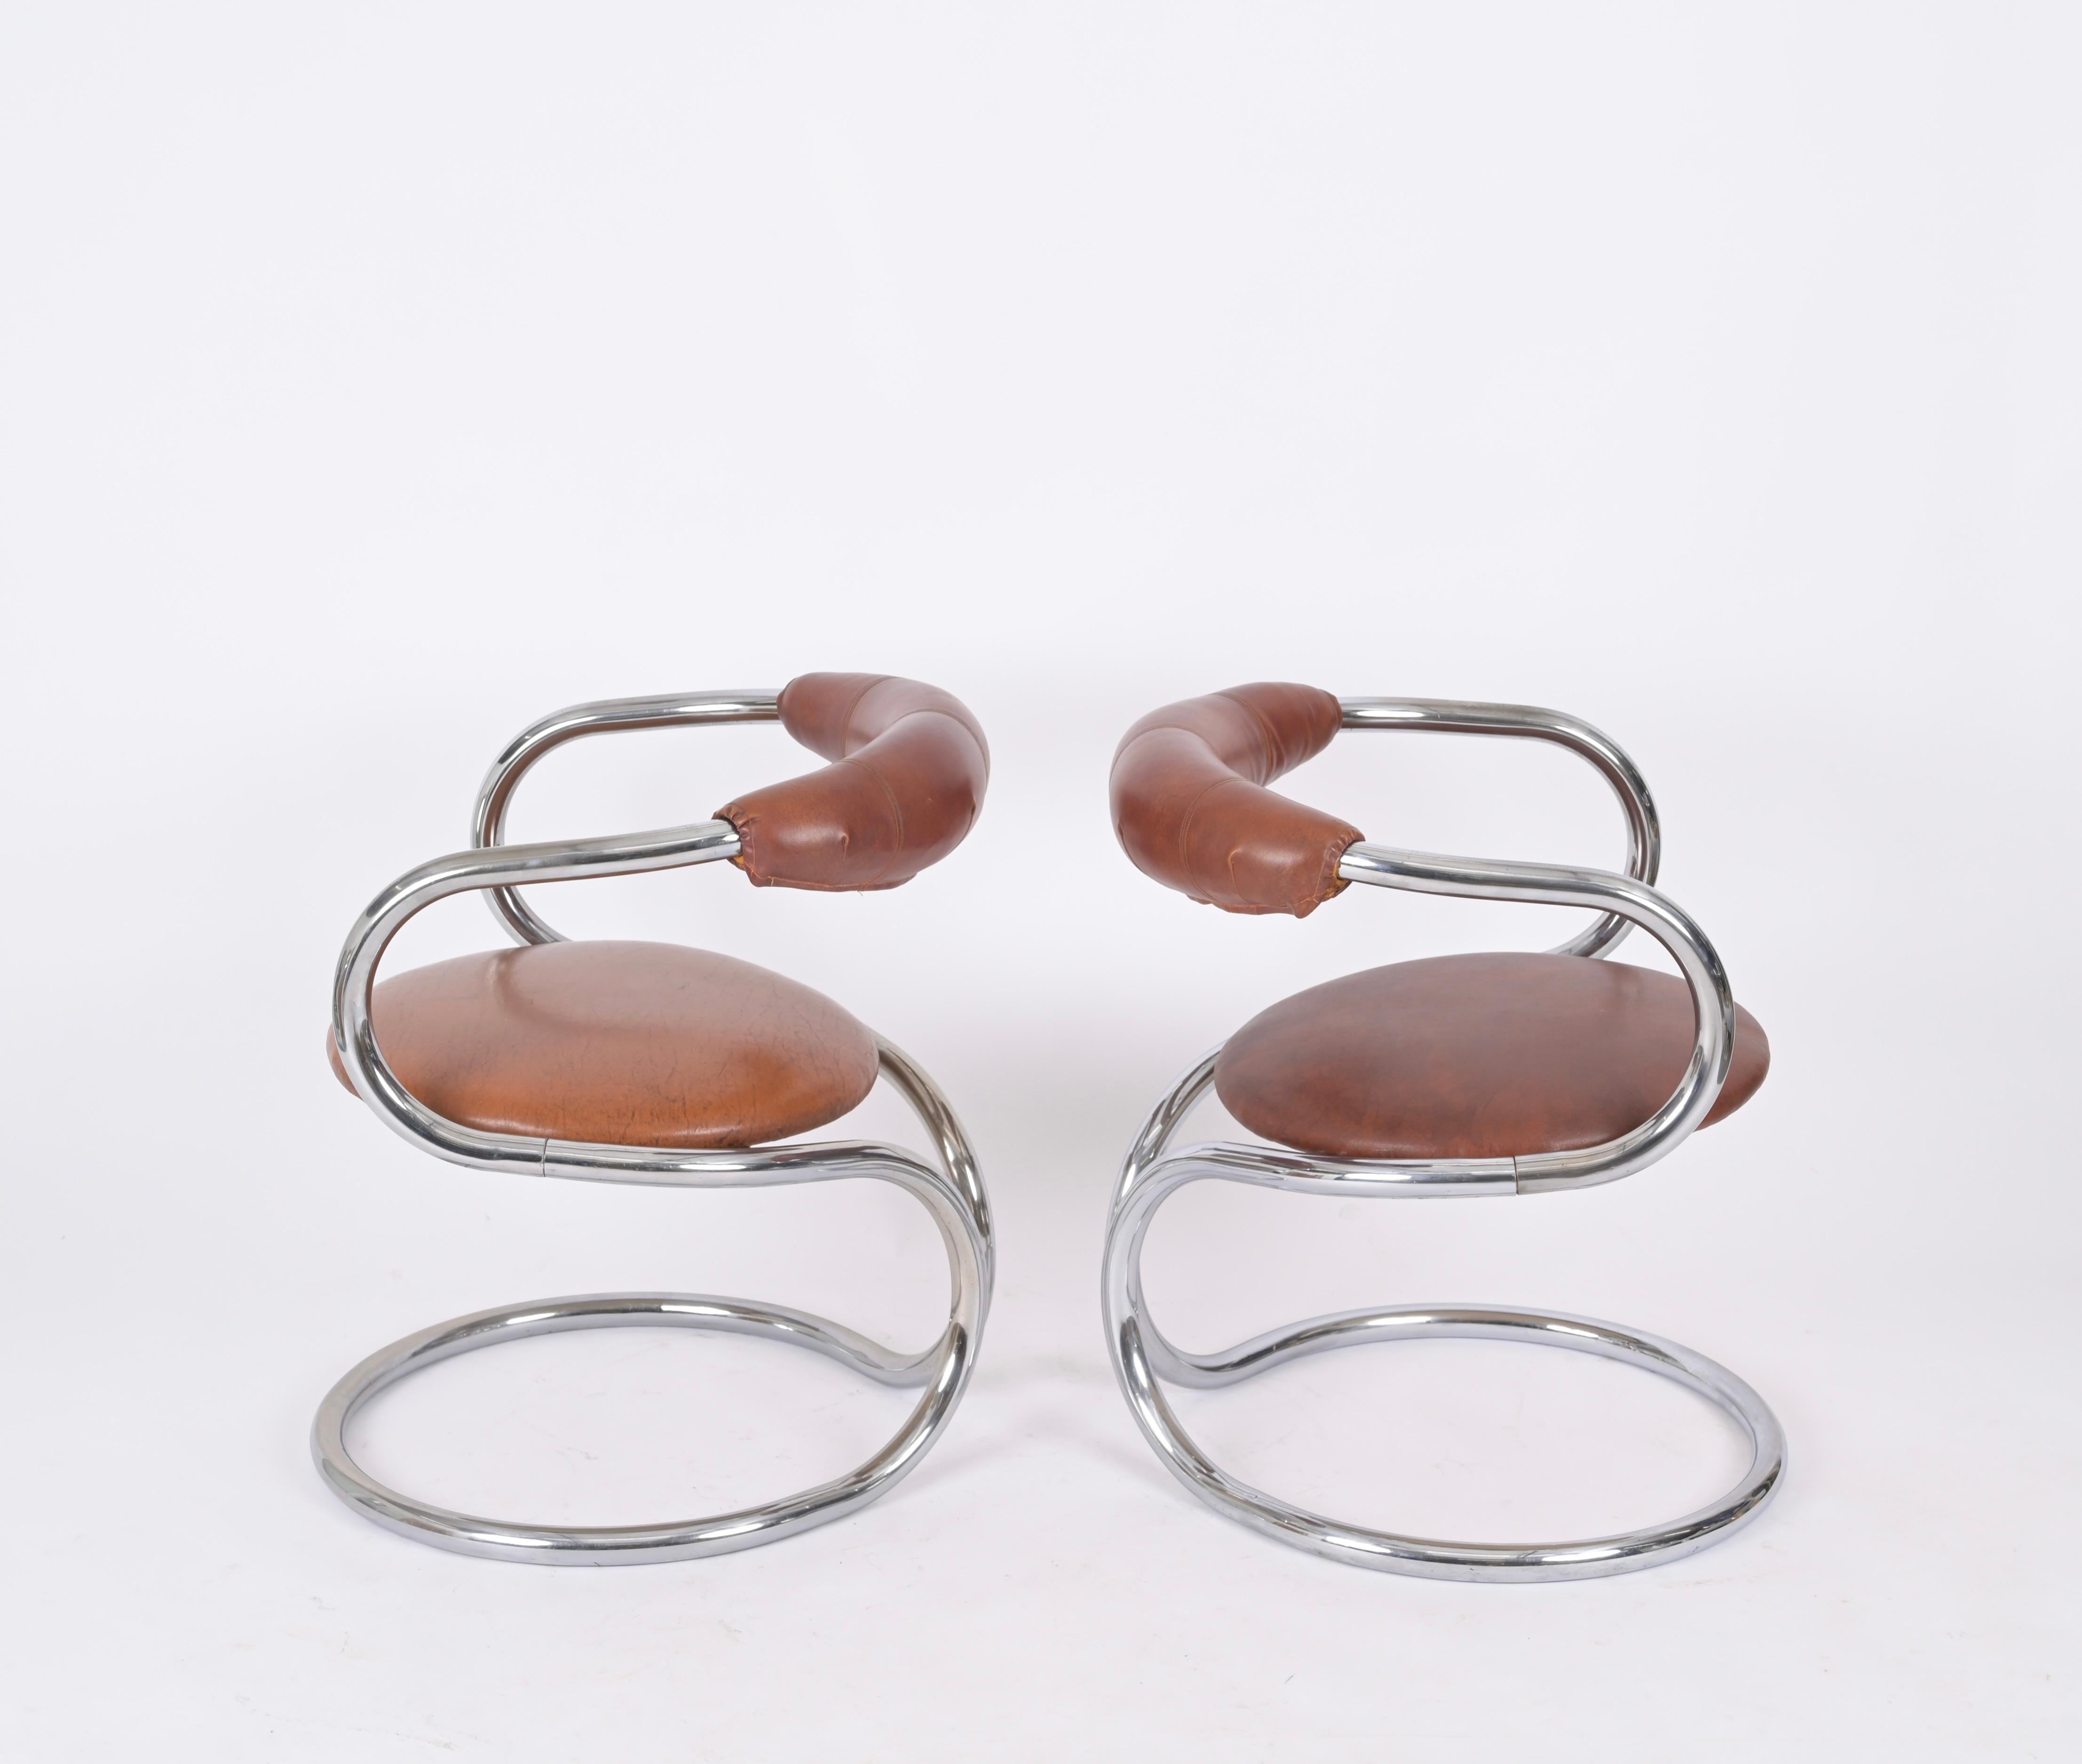 Merveilleux ensemble de deux chaises en acier chromé et cuir brun. Giotto Stoppino a conçu ces chaises dans les années 1970 en Italie.

Ces chaises élégantes ont une magnifique structure tubulaire en acier chromé avec une forme arrondie et